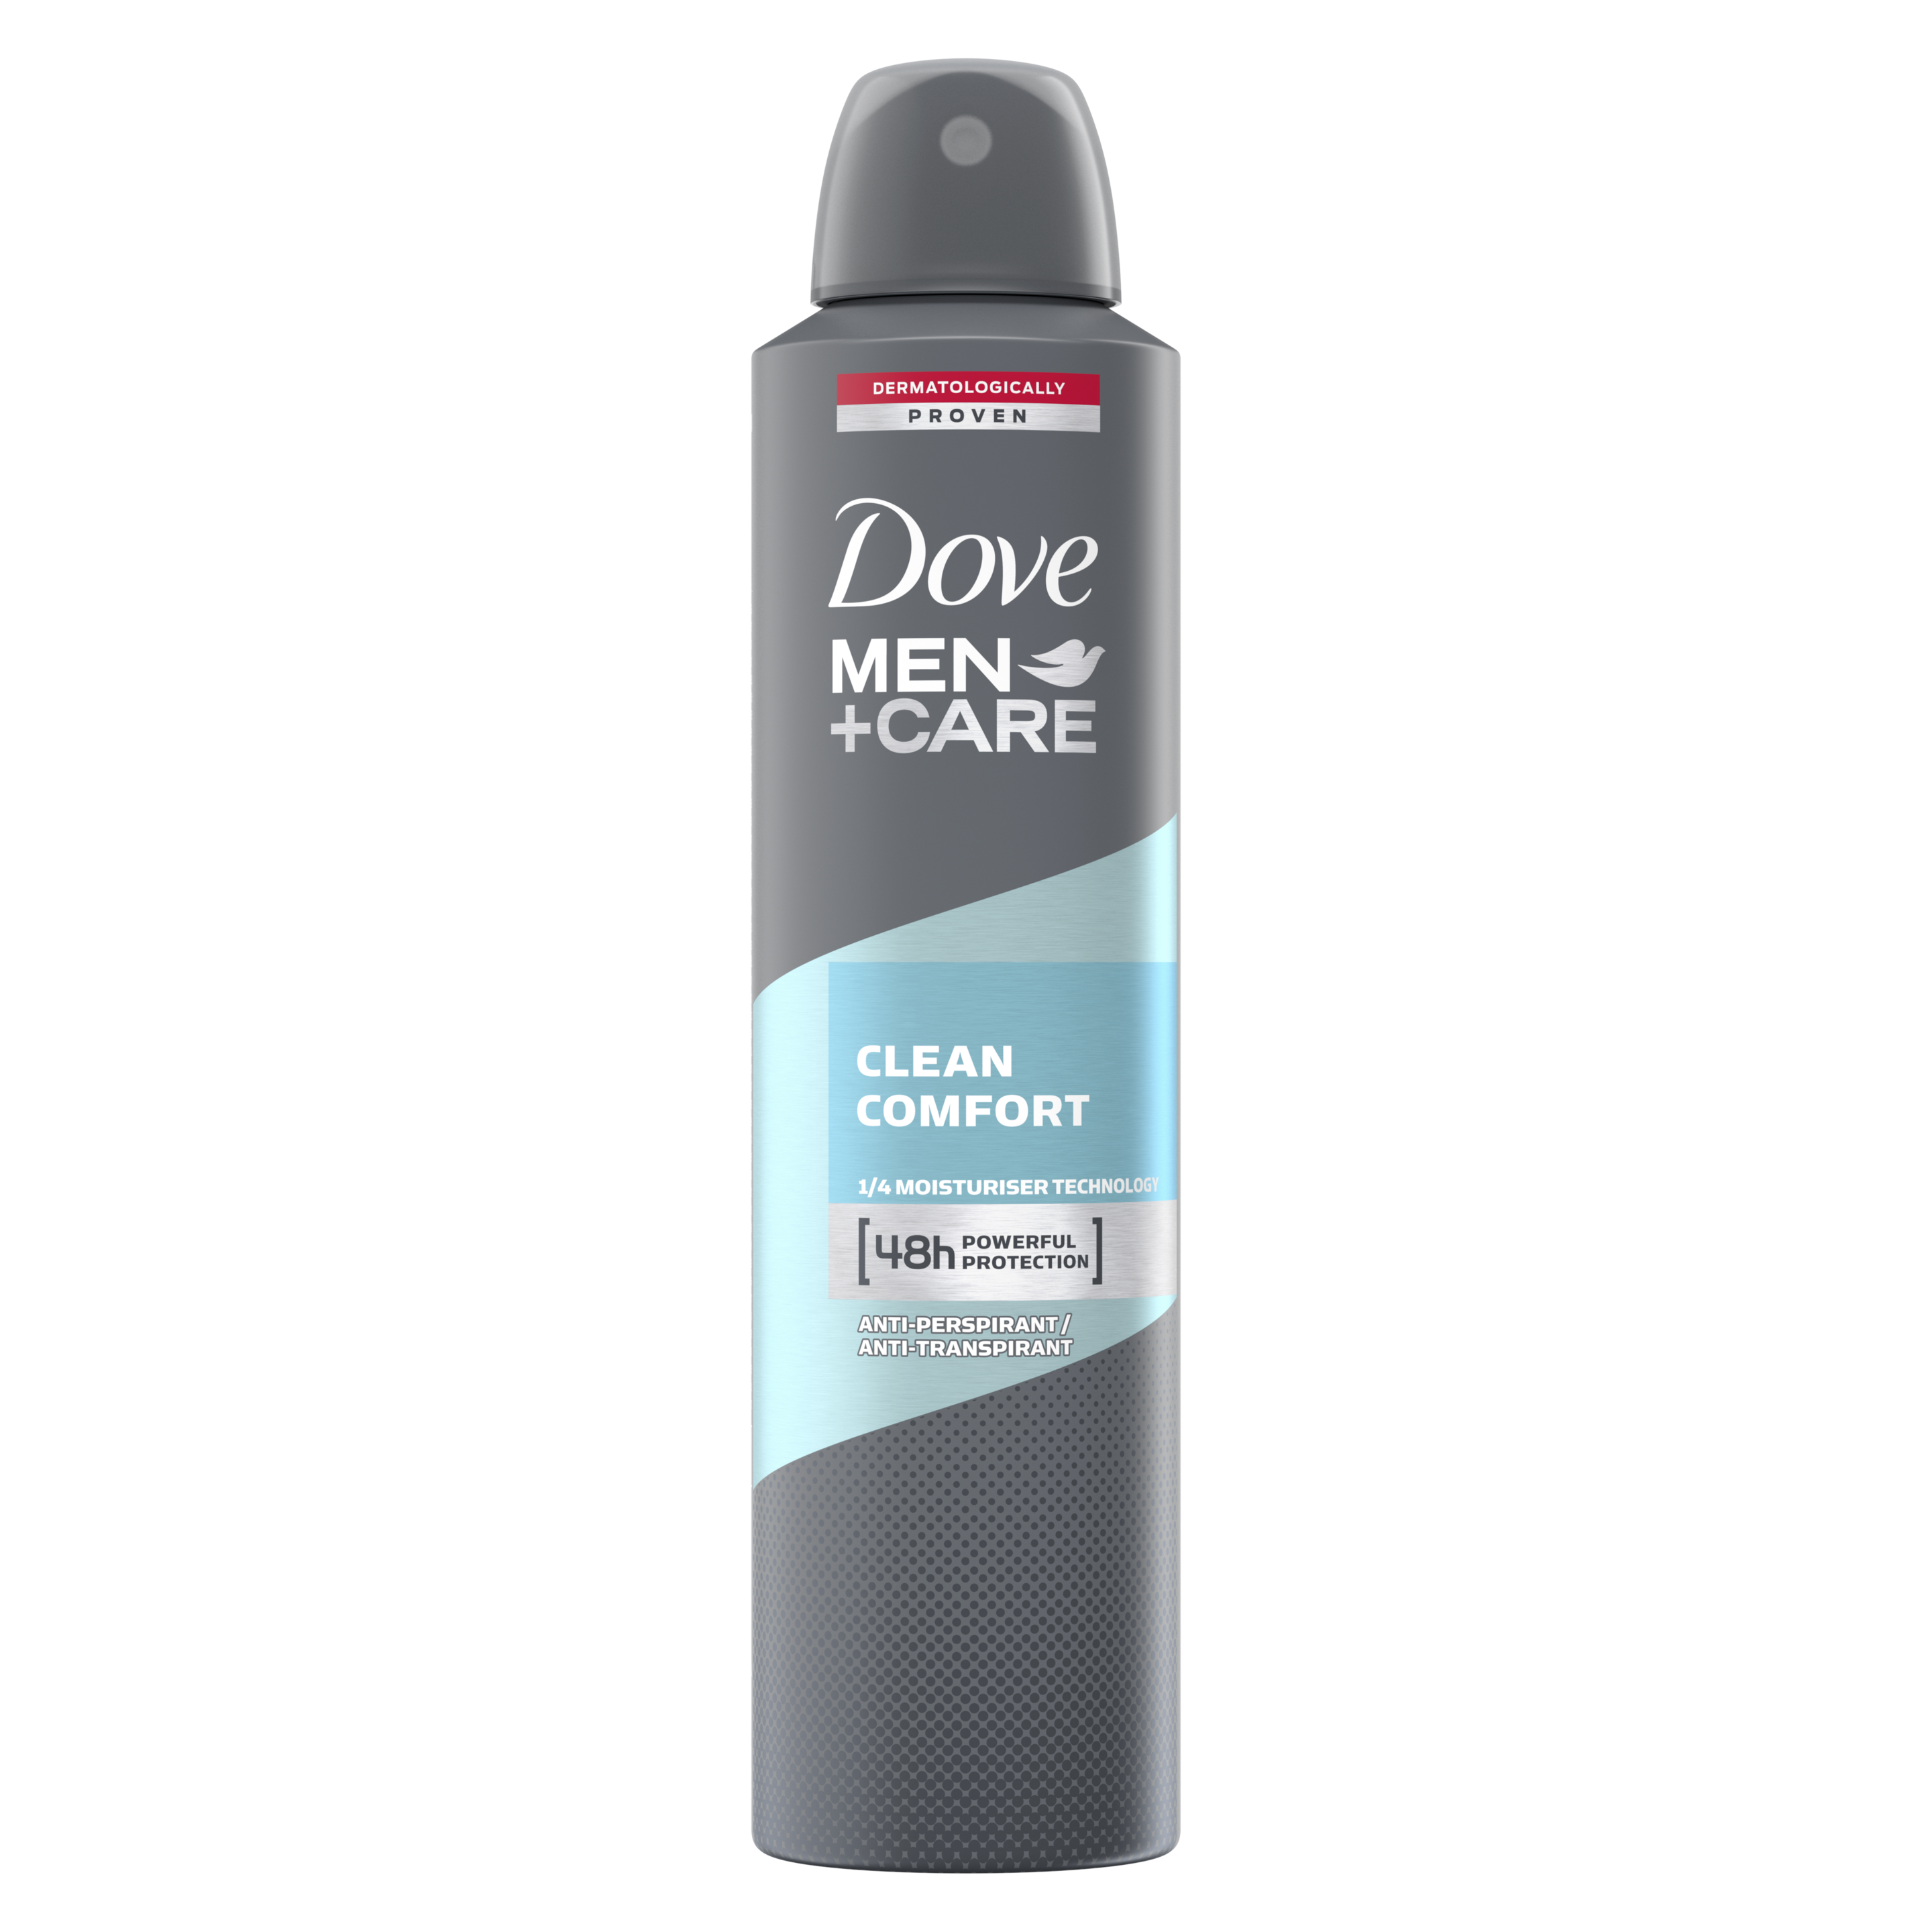 Men's care products - Dove Men+Care | Dove